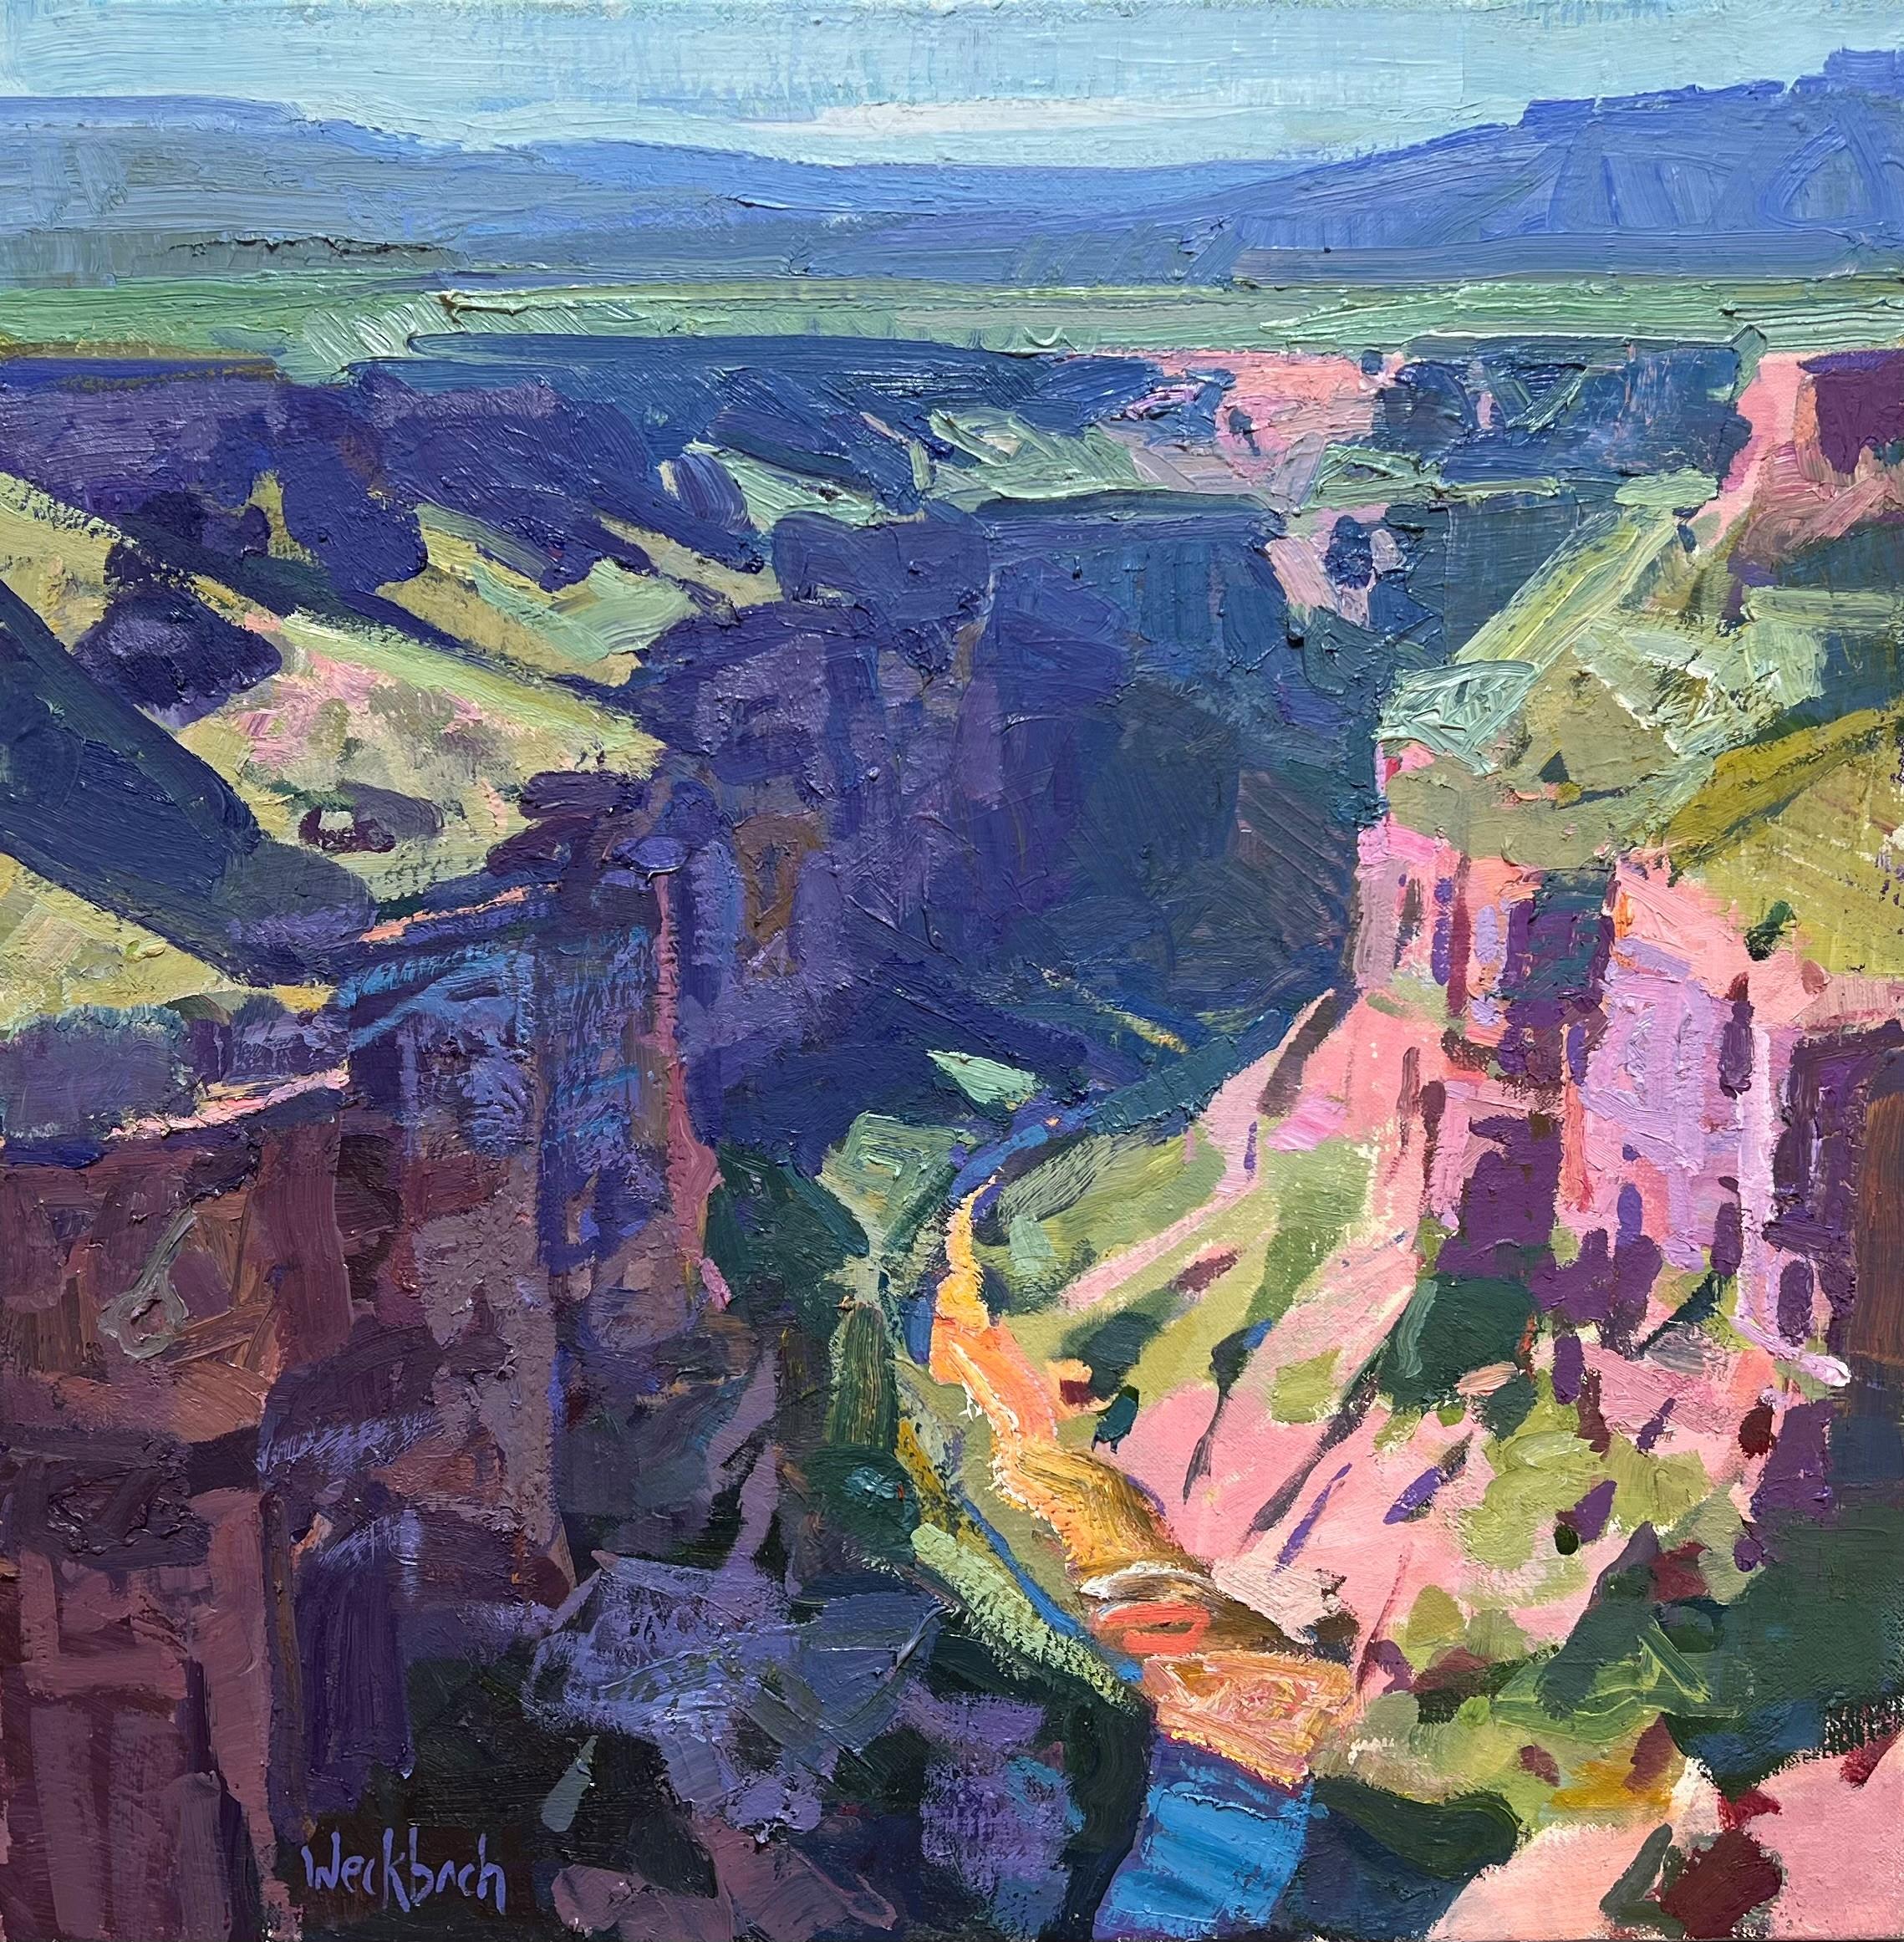 Landscape Painting Kevin Weckbach - "Rio Grande", peinture à l'huile